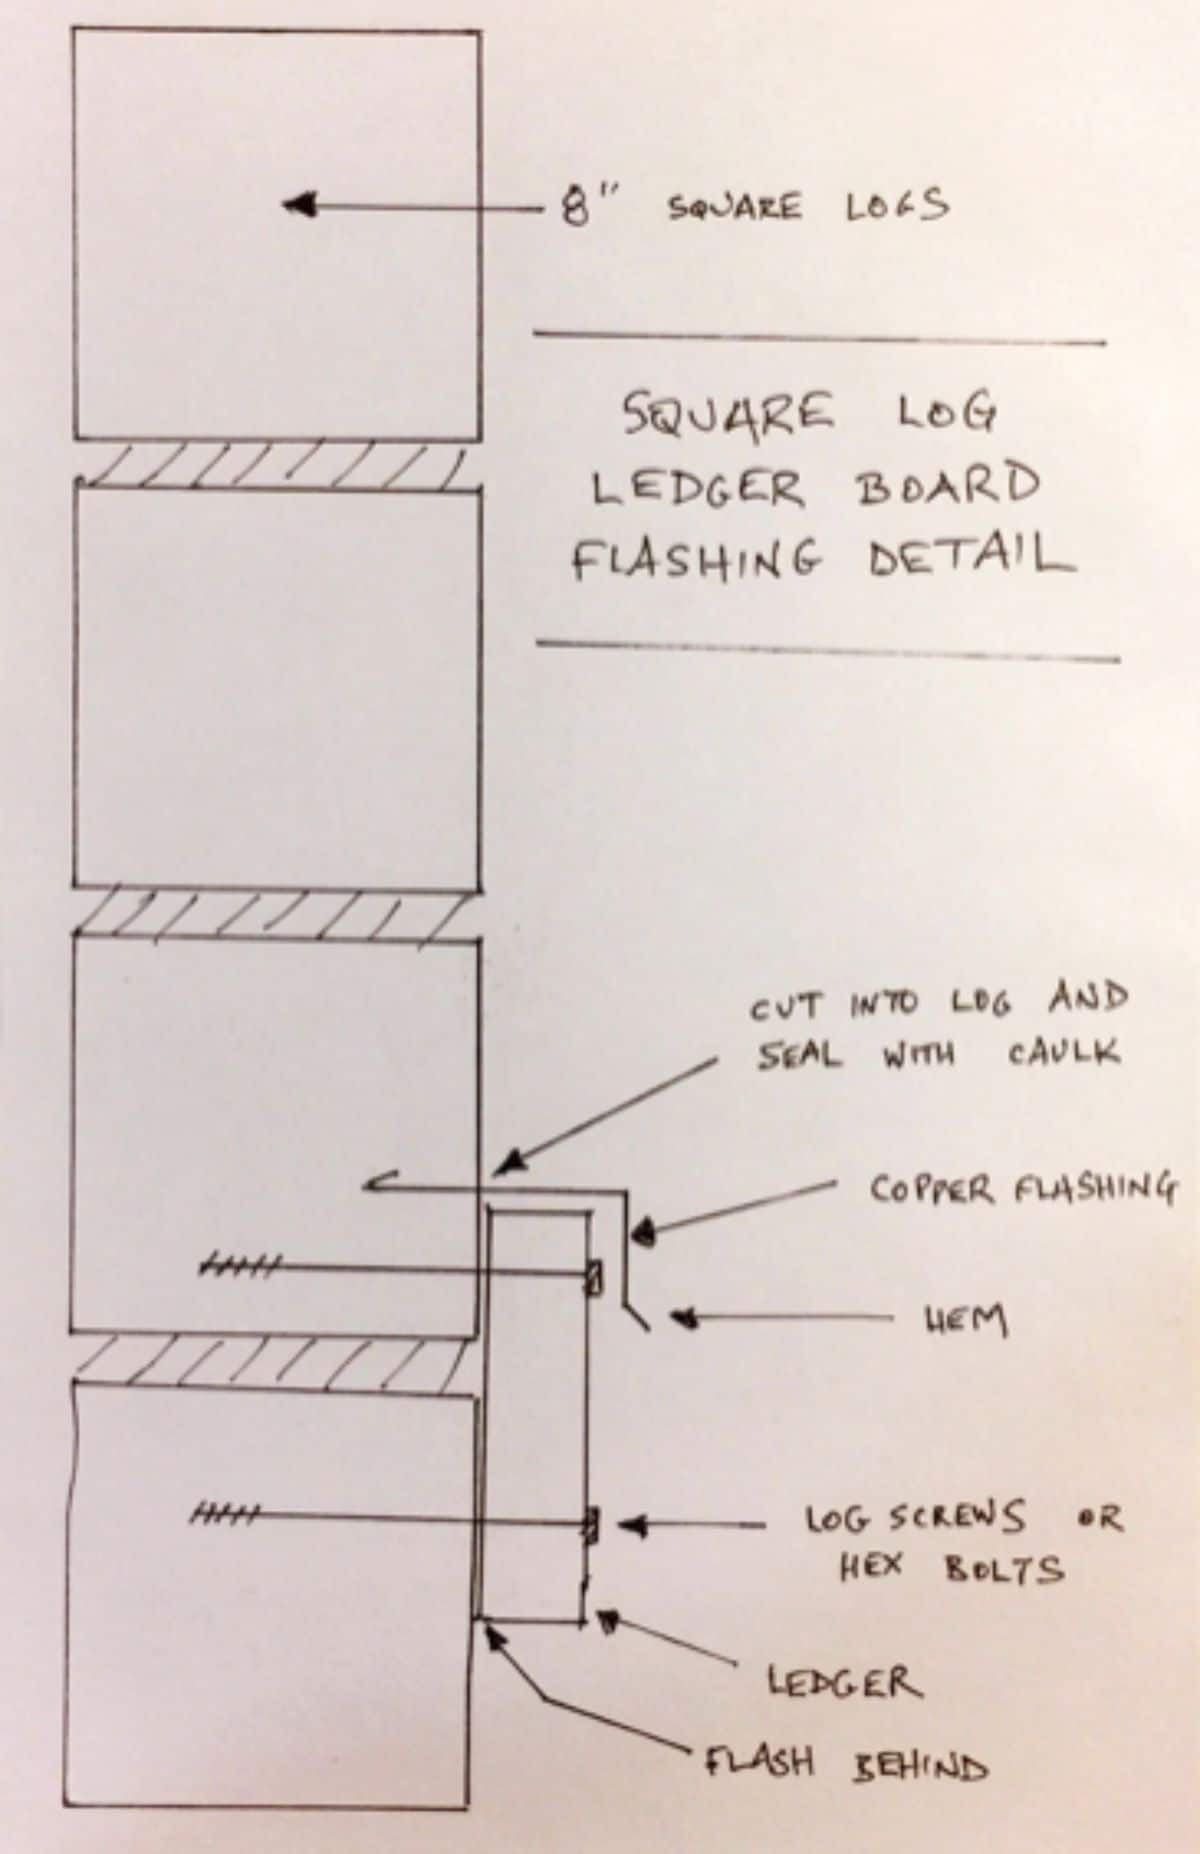 Square Log ledger board flashing details